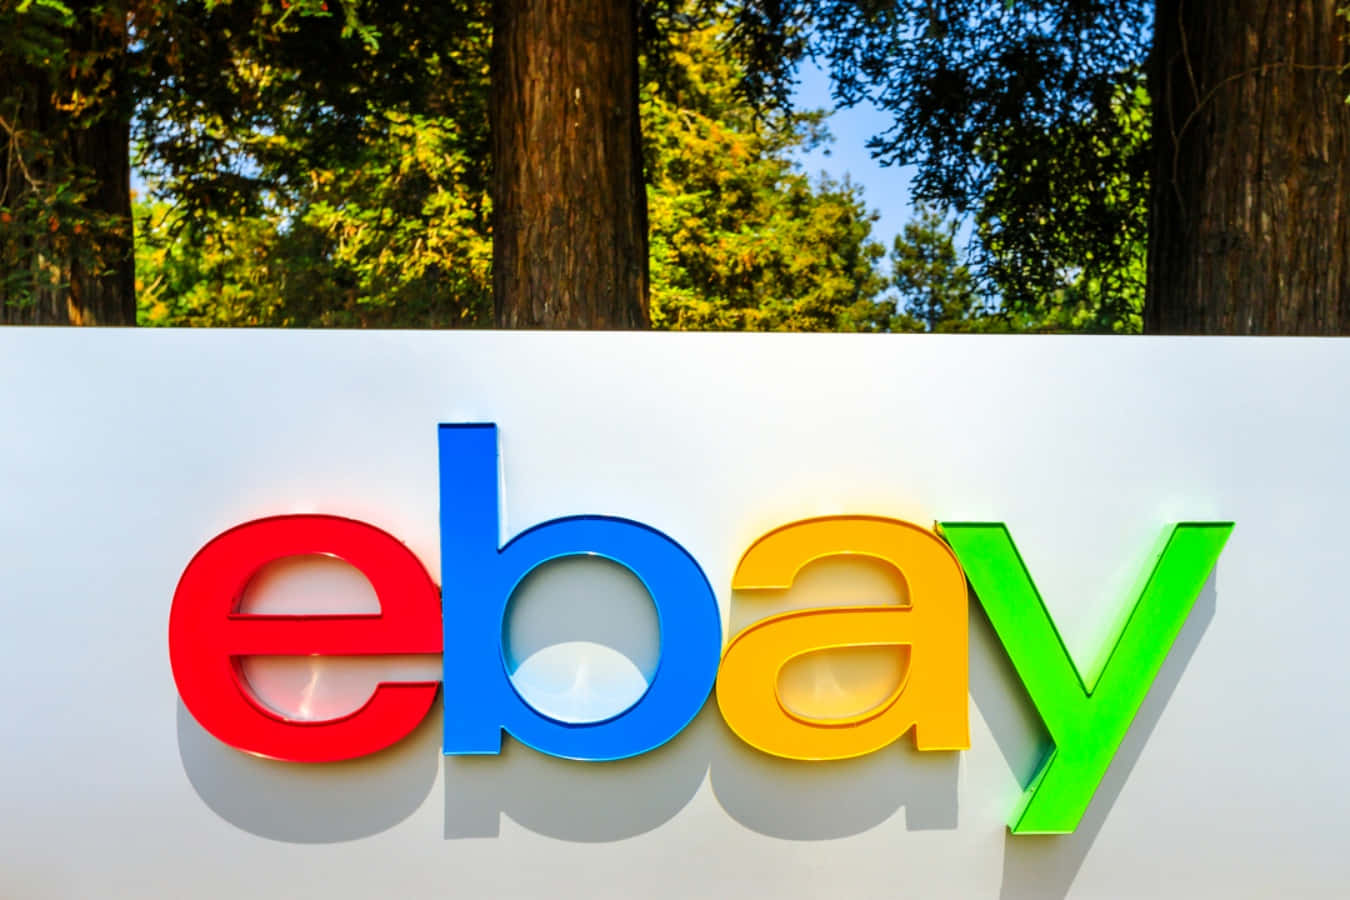 Onovo Logotipo Do Ebay É Exibido Na Frente Das Árvores.